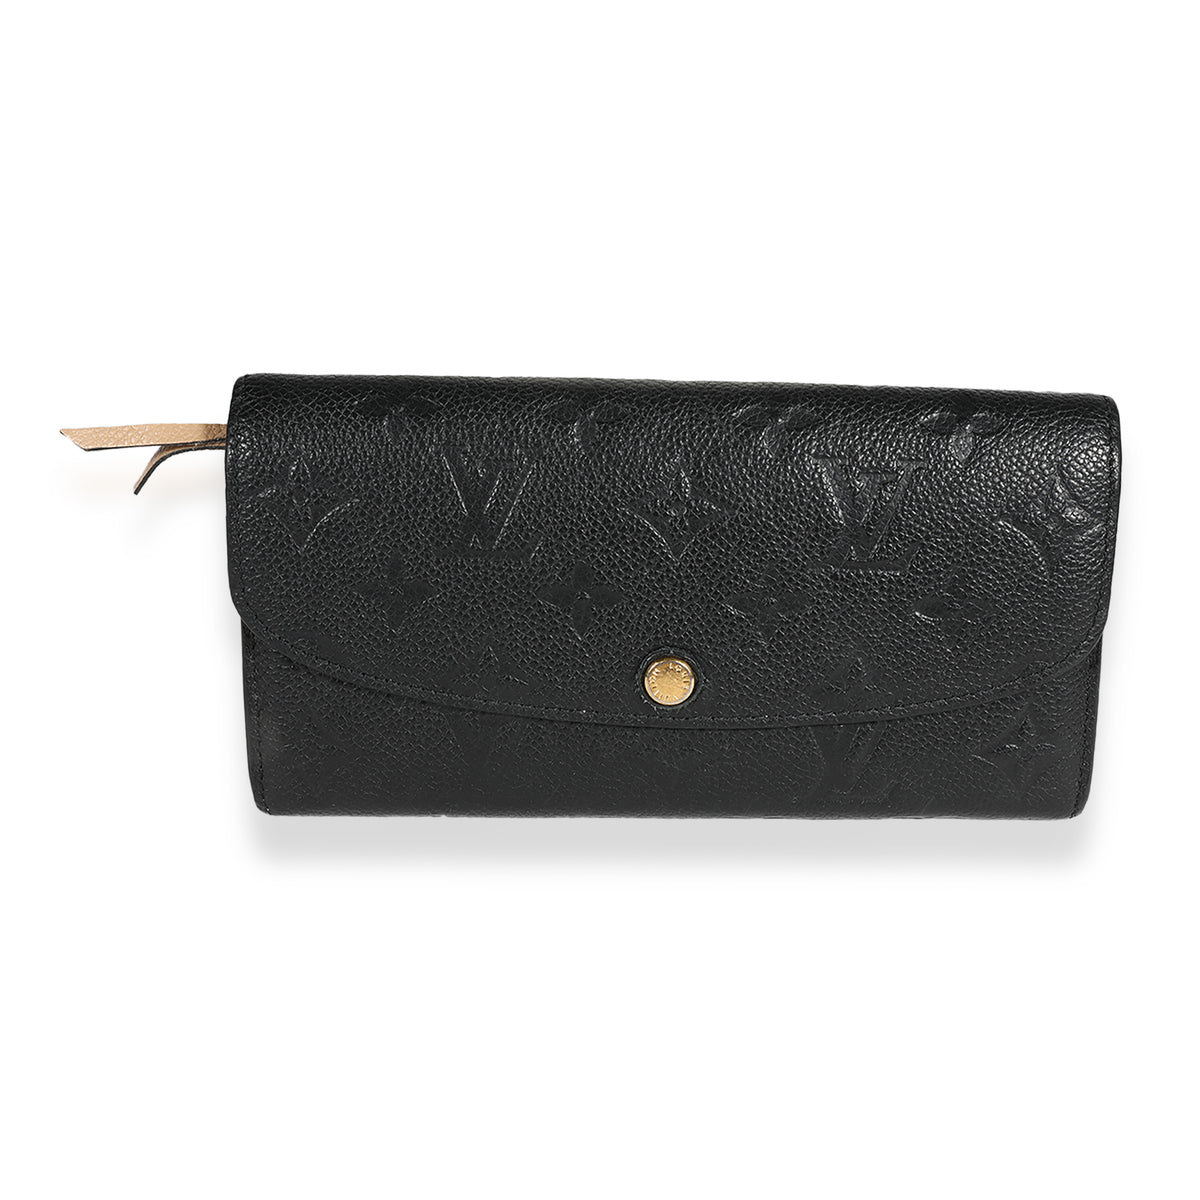 Emilie Long Flap Wallet in Monogram Empreinte leather, Gold Hardware